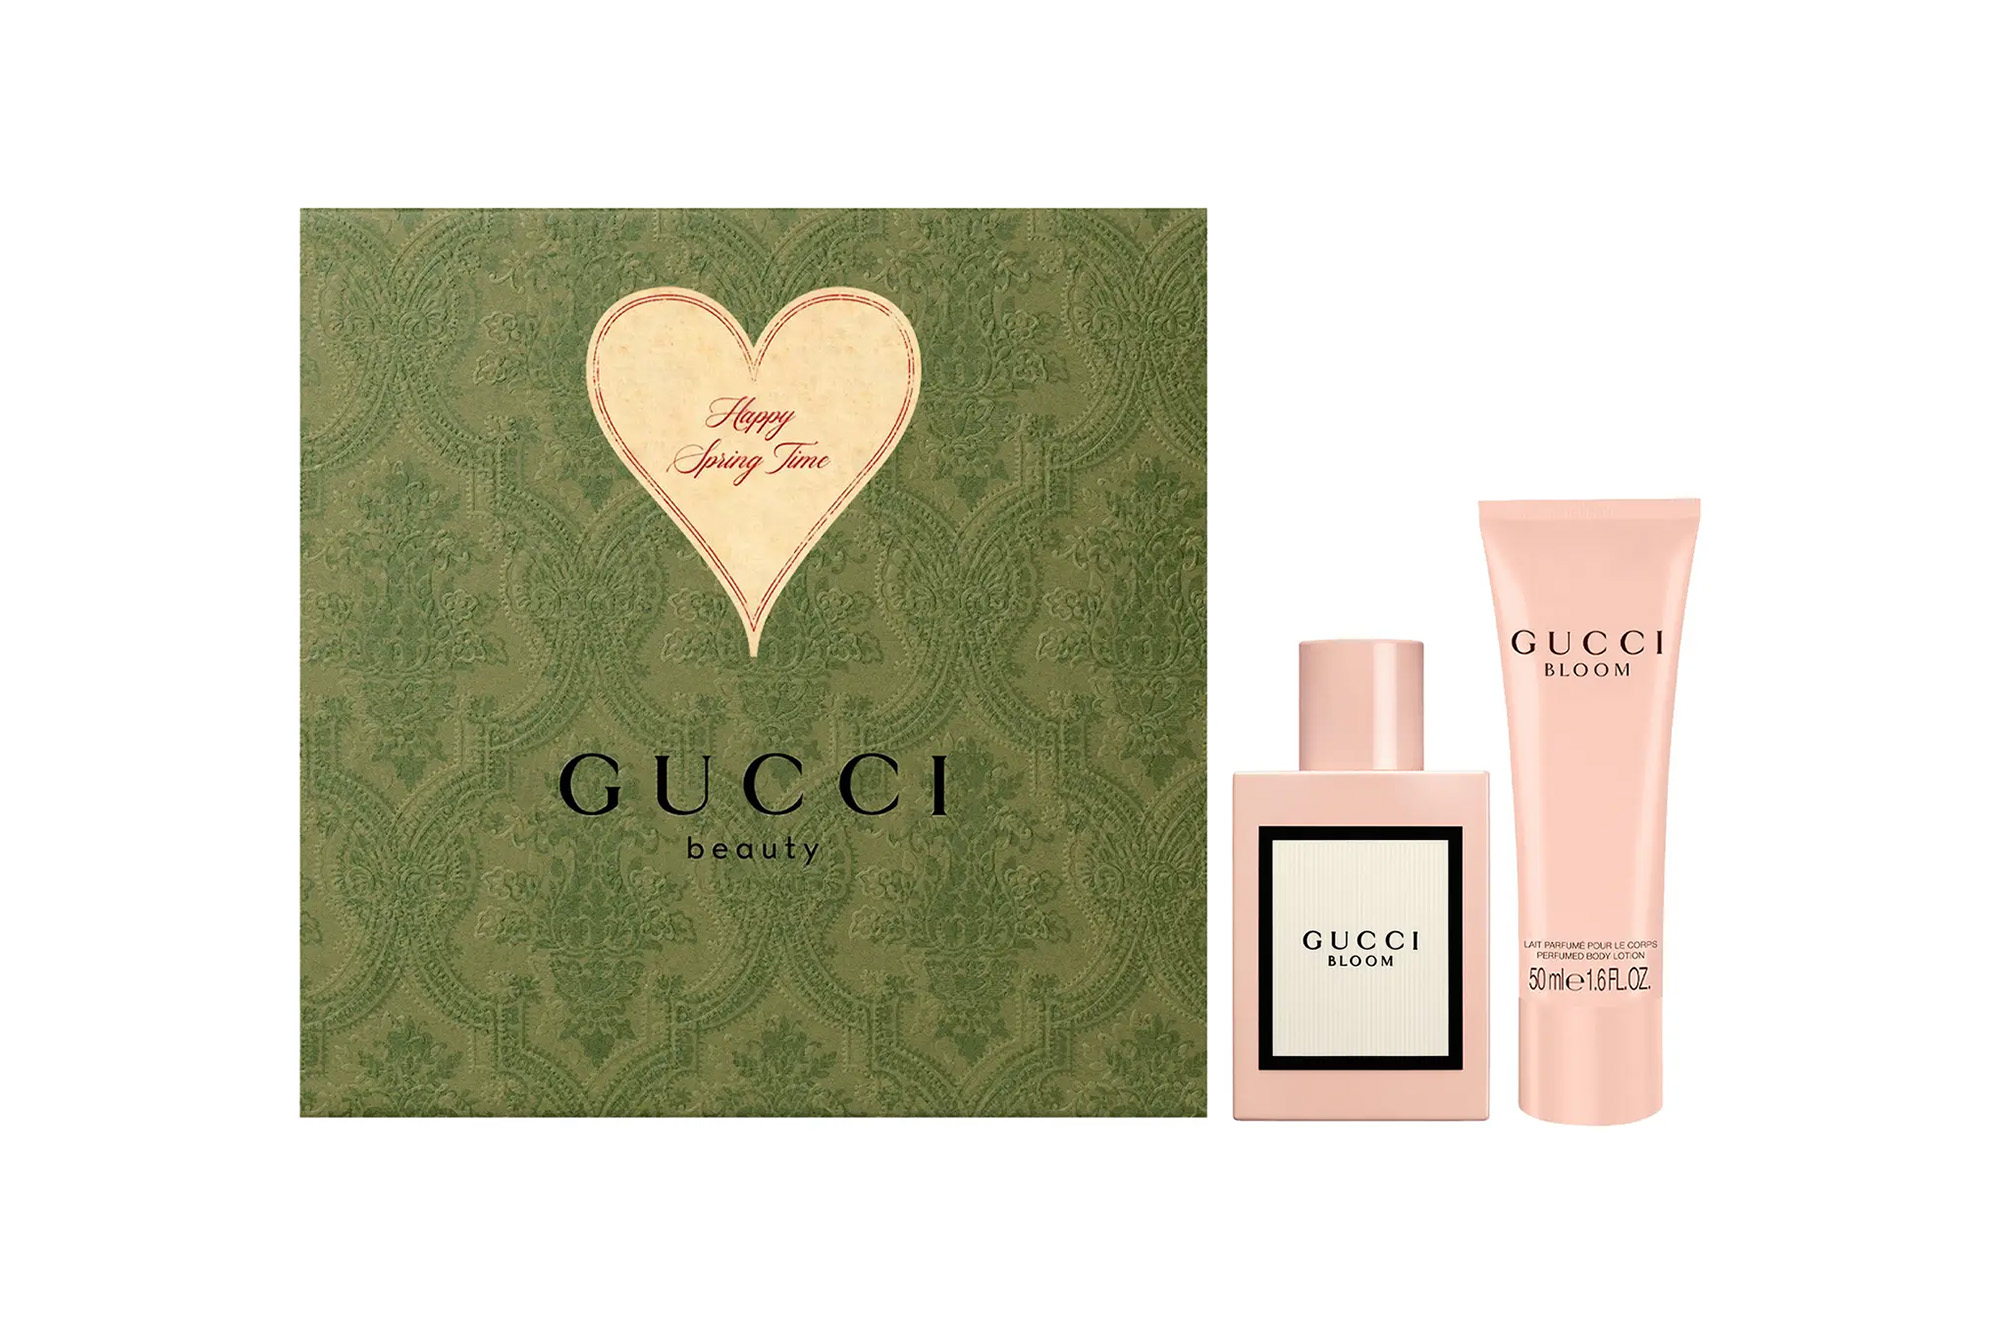 Gucci Bloom lotion and eau de parfum